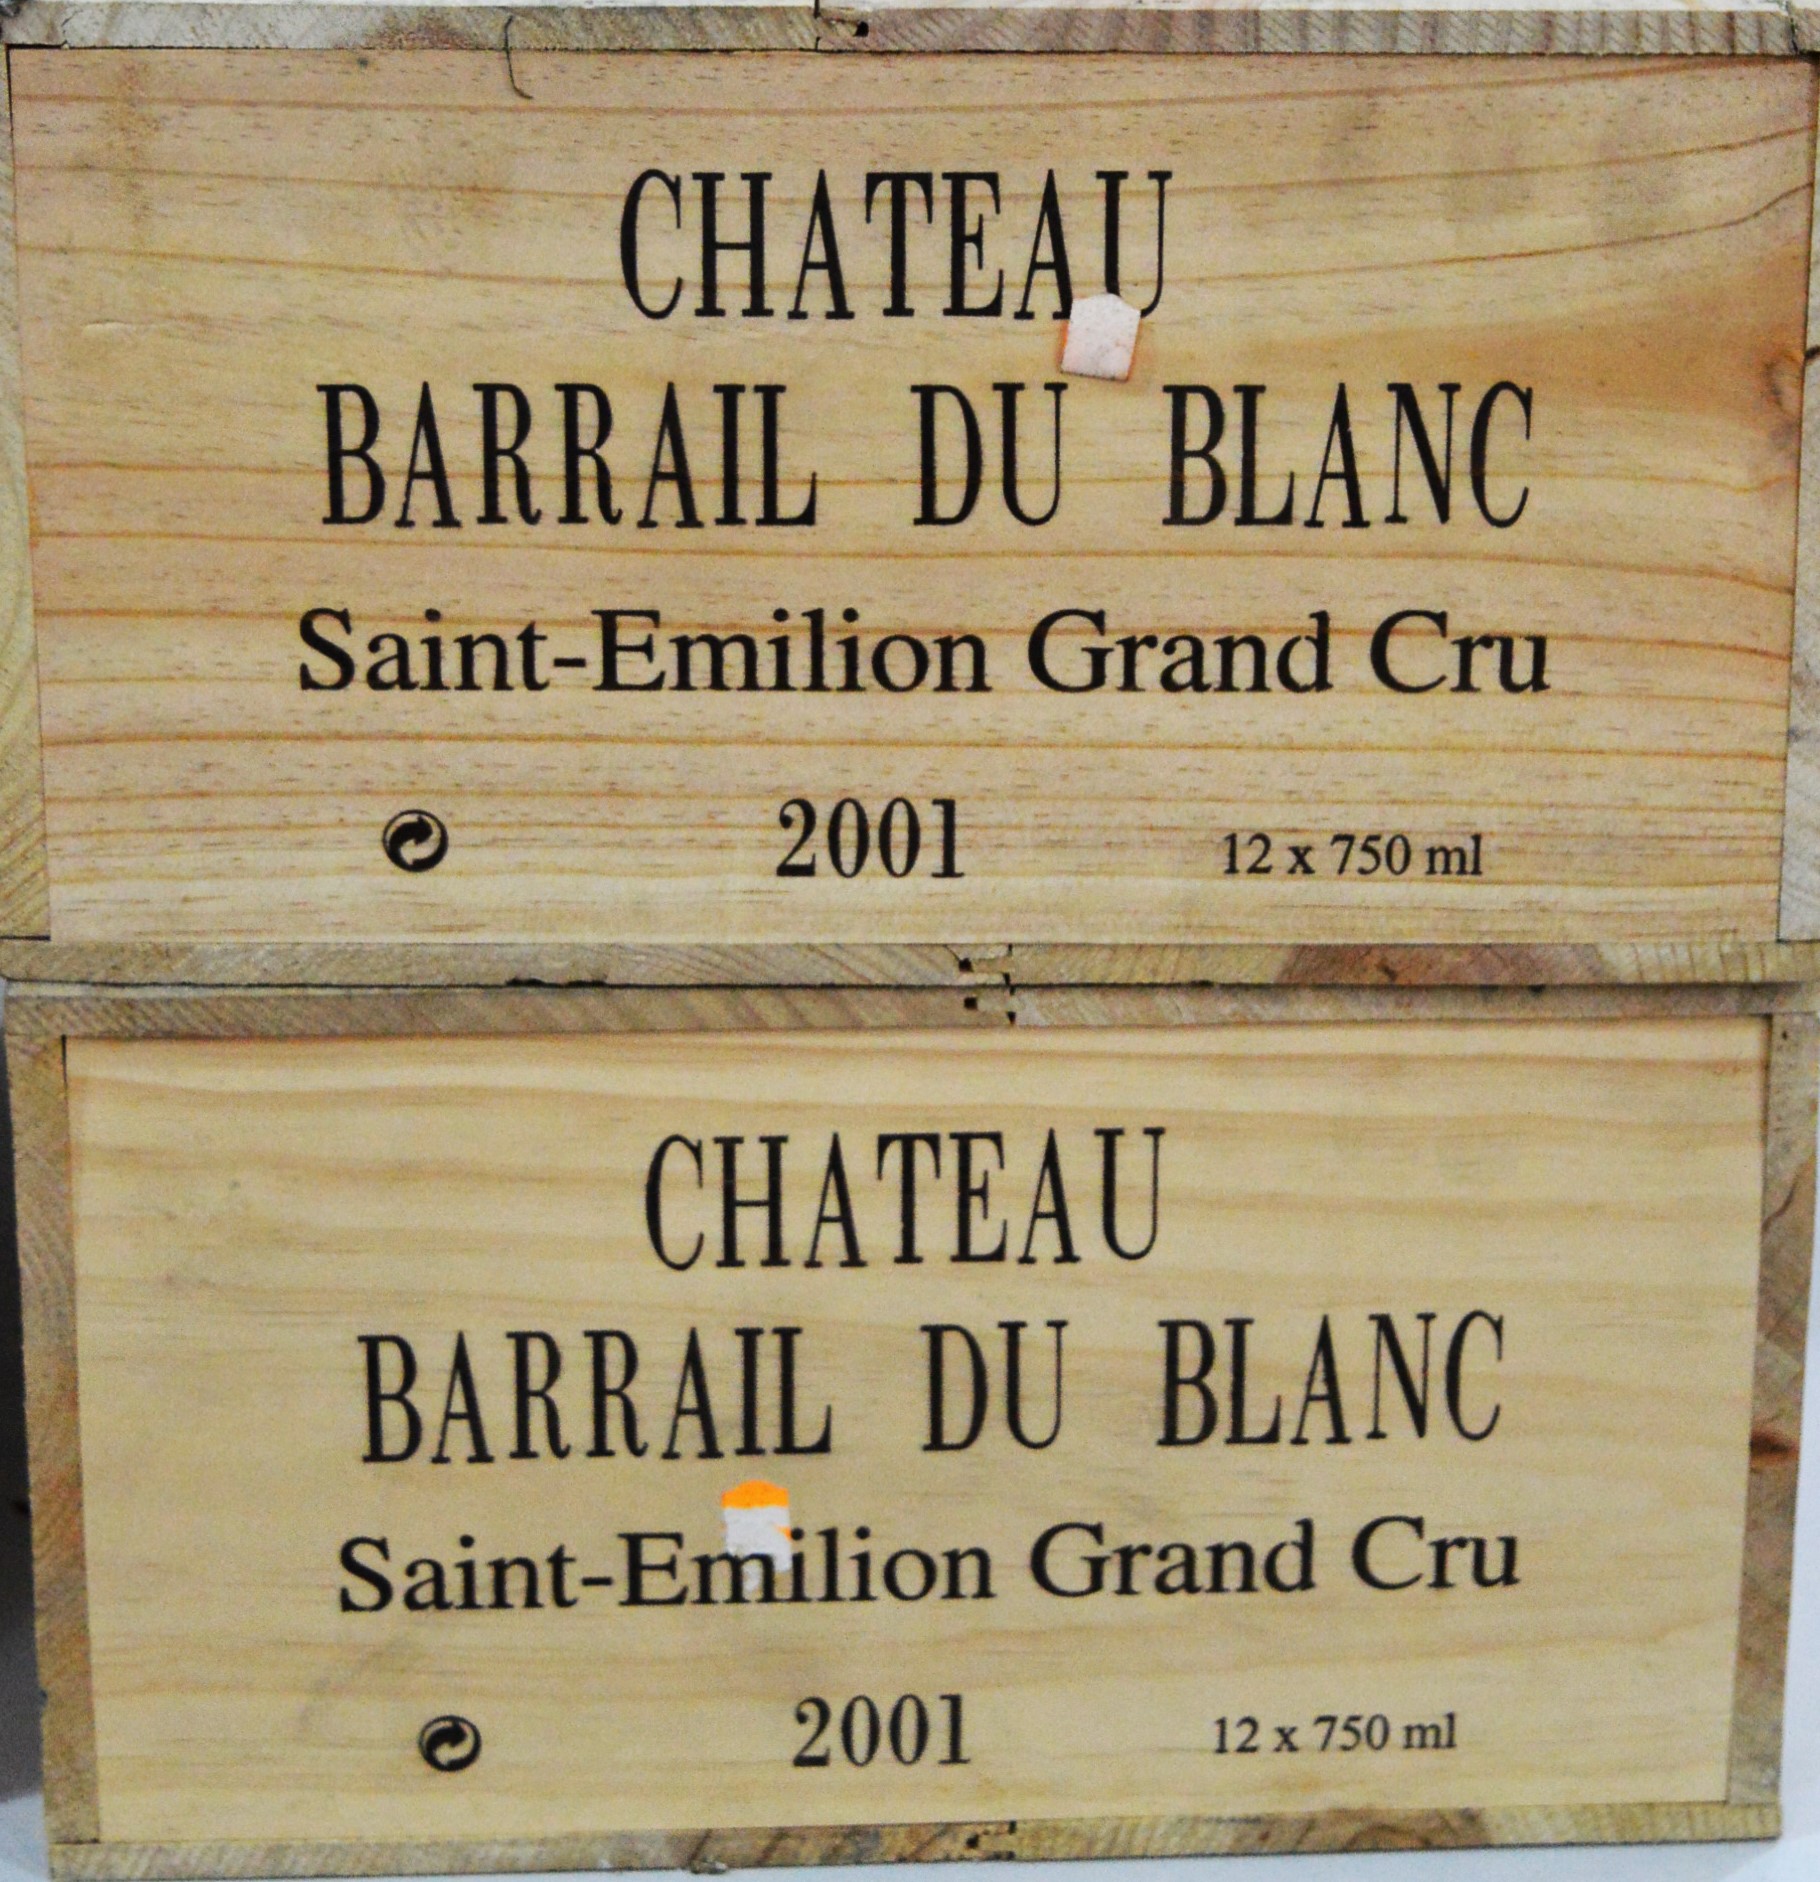 Twenty-Four bottles of Chateau Barrail du Blanc.